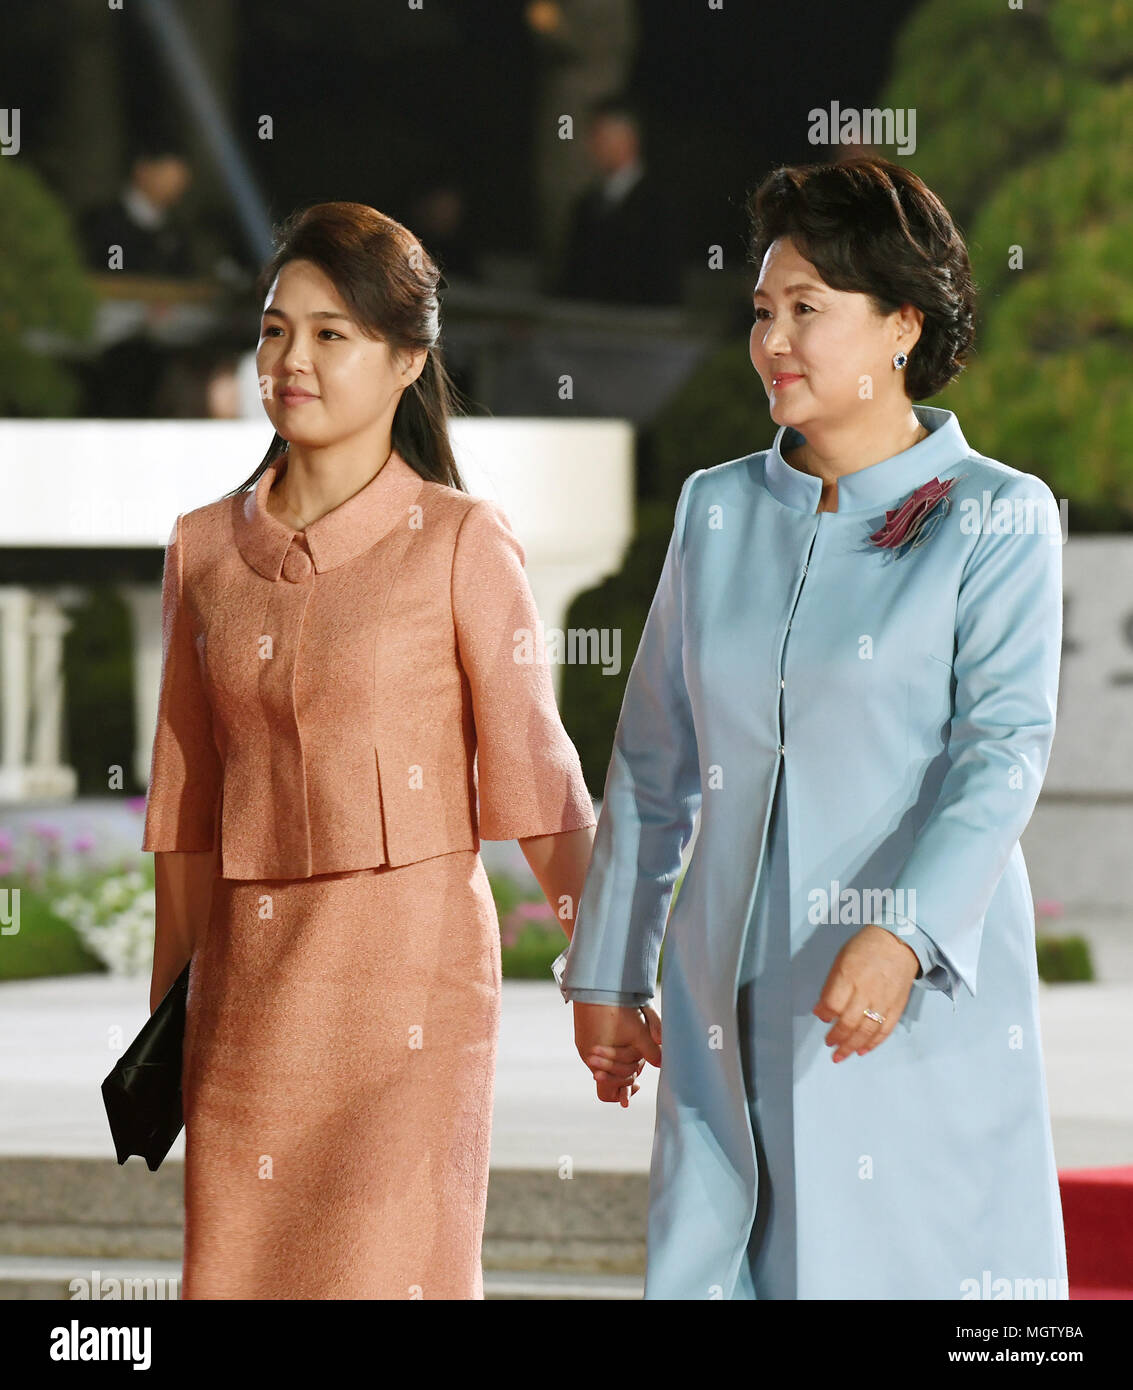 Kim Jung-Sook e Ri Sol-Ju, Apr 27, 2018 : il Presidente sud coreano Jae-In luna la moglie Kim Jung-Sook (R) e leader della Corea del nord Kim Jong-Un la moglie di Ri Sol-Ju camminare insieme al di fuori della casa di pace per guardare un addio mostra dopo lo storico vertice intercoreano a Panmunjom nella zona demilitarizzata (DMZ) che separa le due Coree in Paju, a nord di Seul, Corea del Sud. Lo storico vertice si è concluso il 27 aprile con le chiamate per la completa denuclearization della penisola coreana e la cessazione immediata di tutti gli atti ostili i media locali hanno riferito. Solo uso editoriale (foto dal vertice intercoreano premere Co Foto Stock